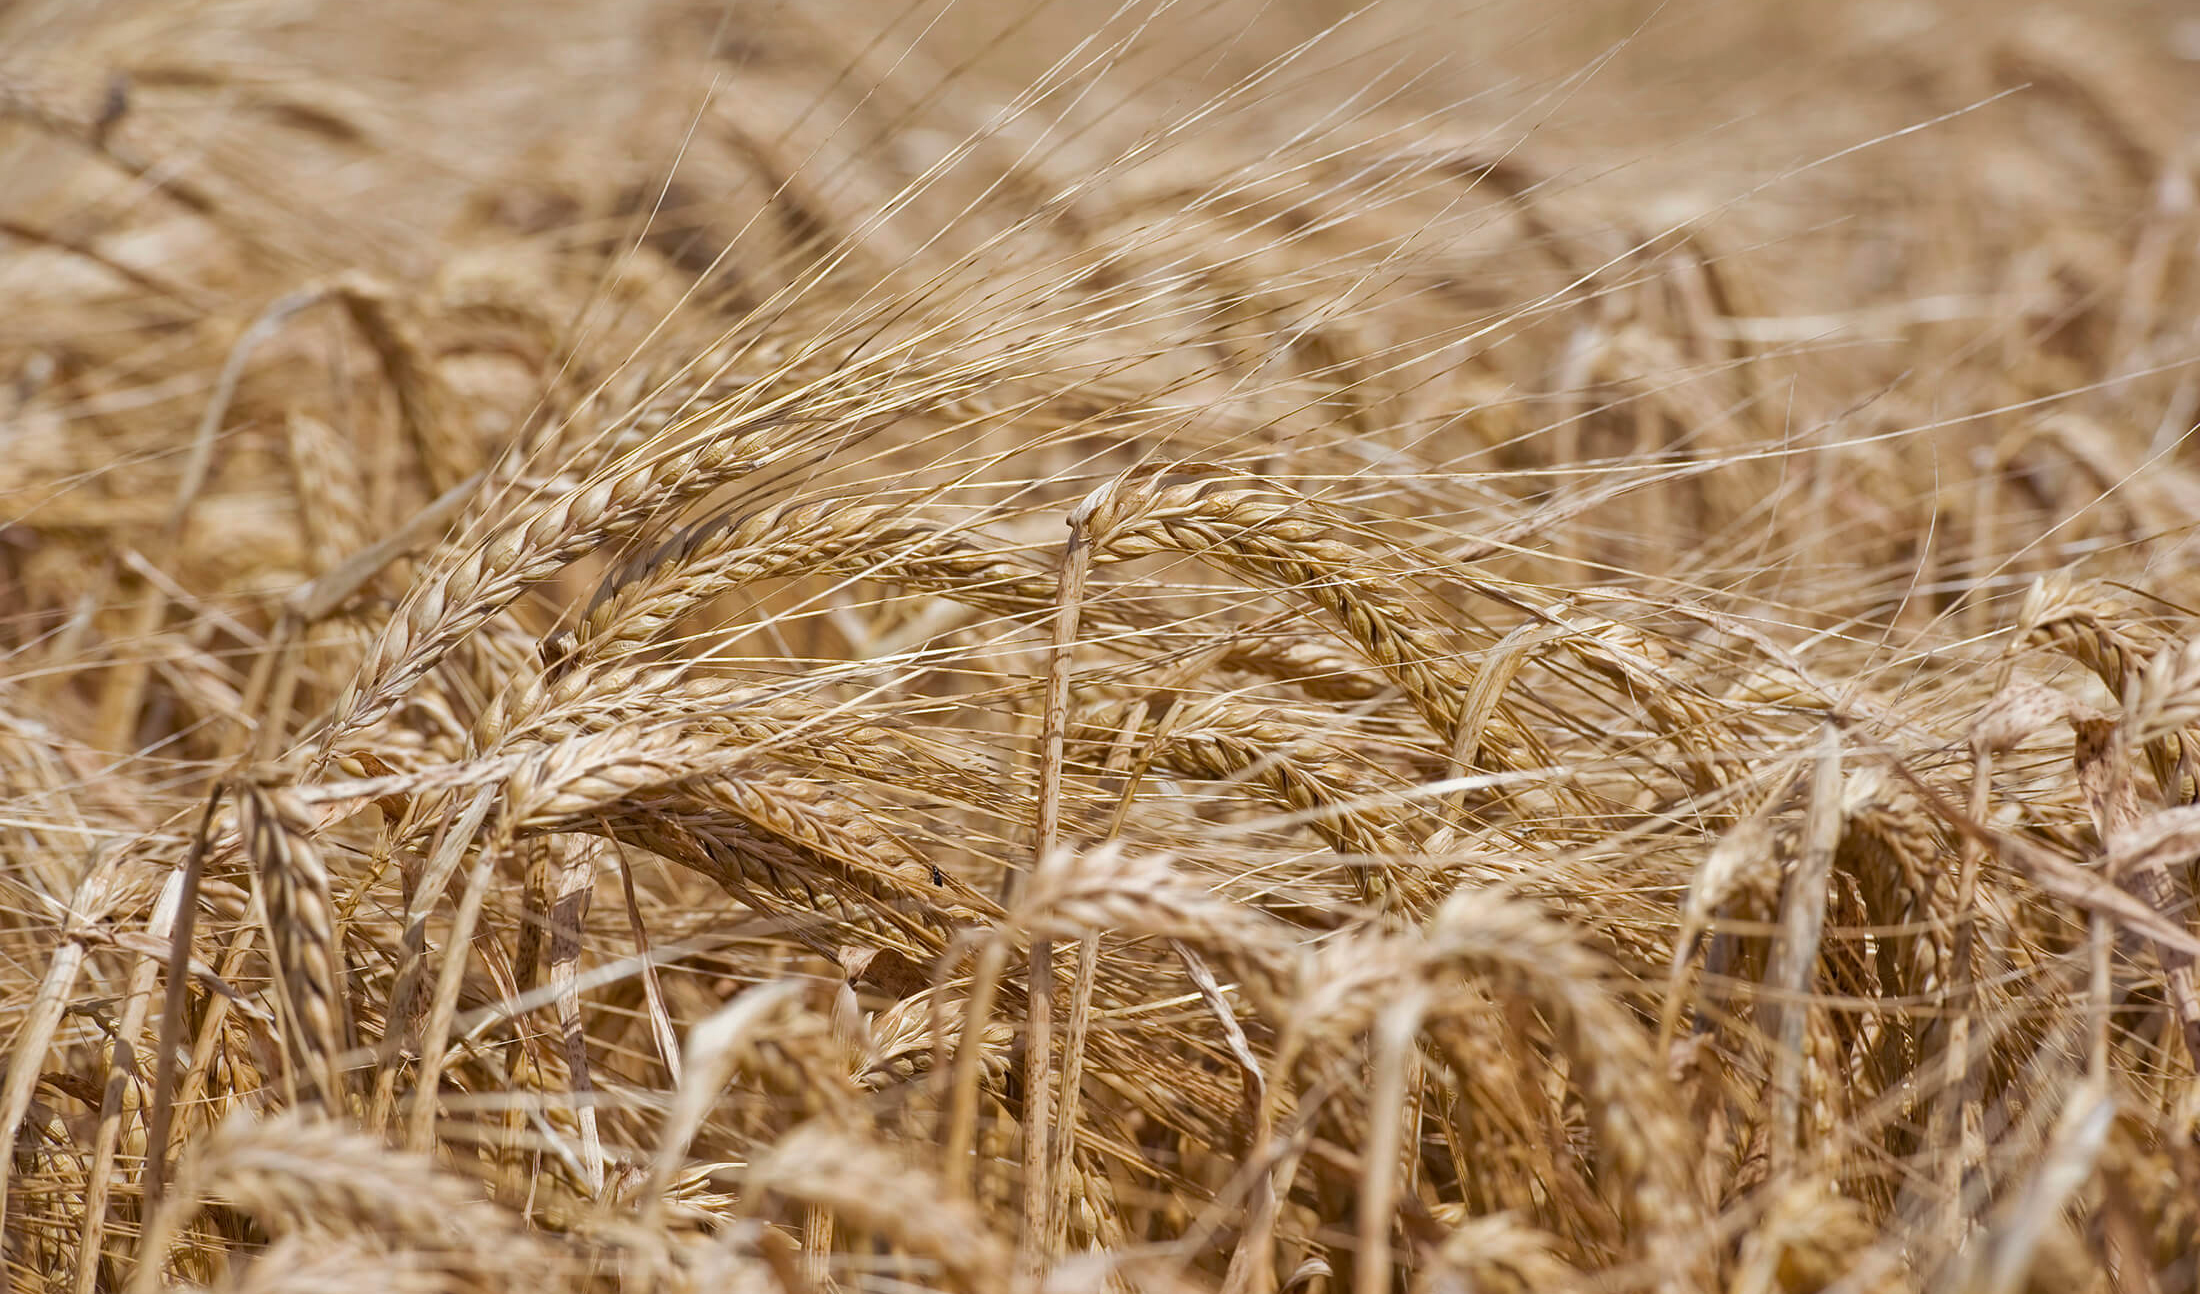 قیمت خرید تضمینی گندم برای سال زراعی جدید ۱۳ هزار تومان تعیین شد